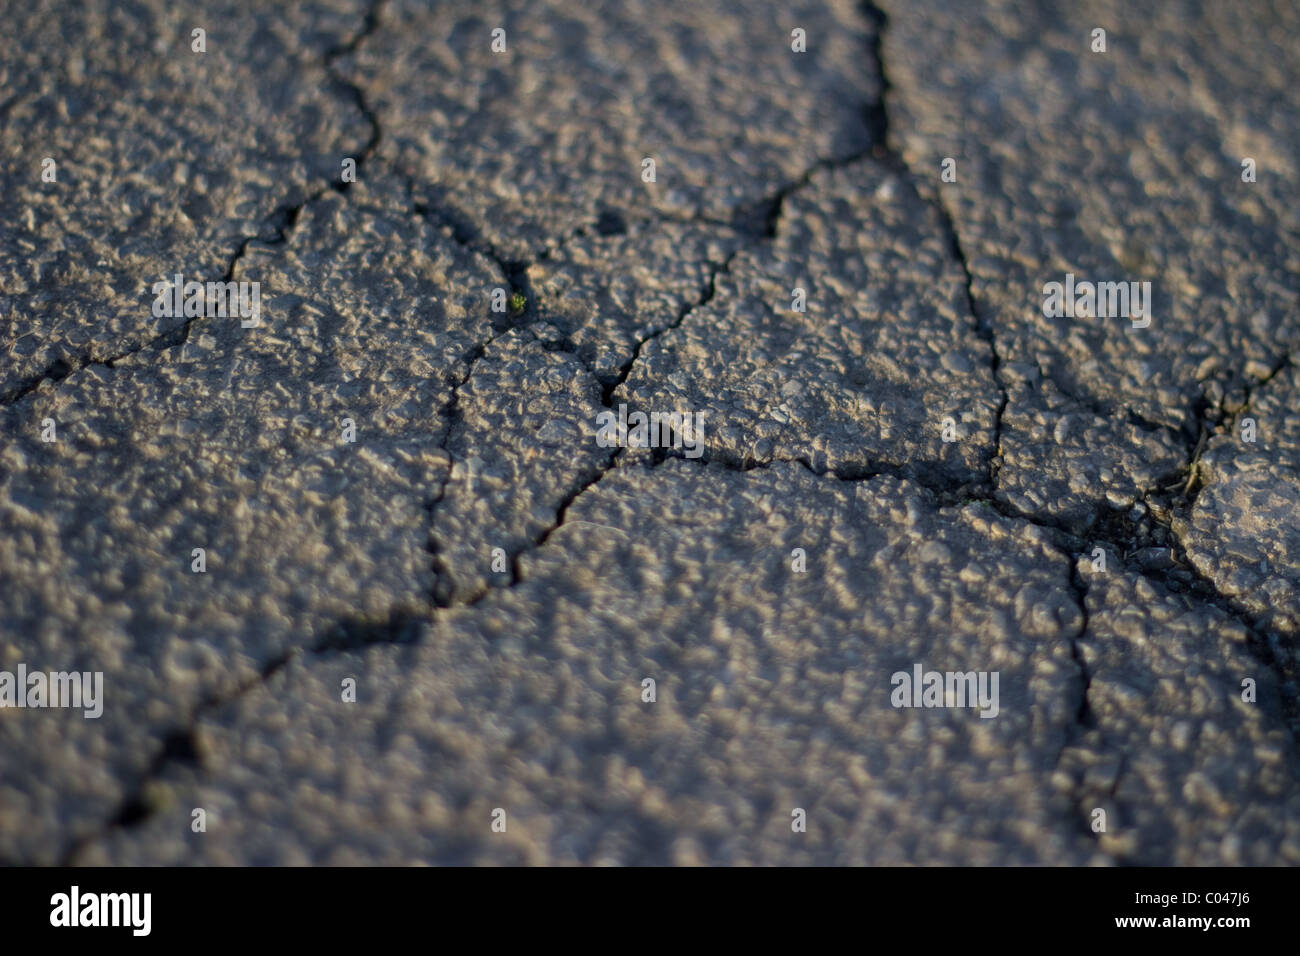 Das Bild zeig Risse in einer Straße. The picture shows cracks in a road. Stock Photo